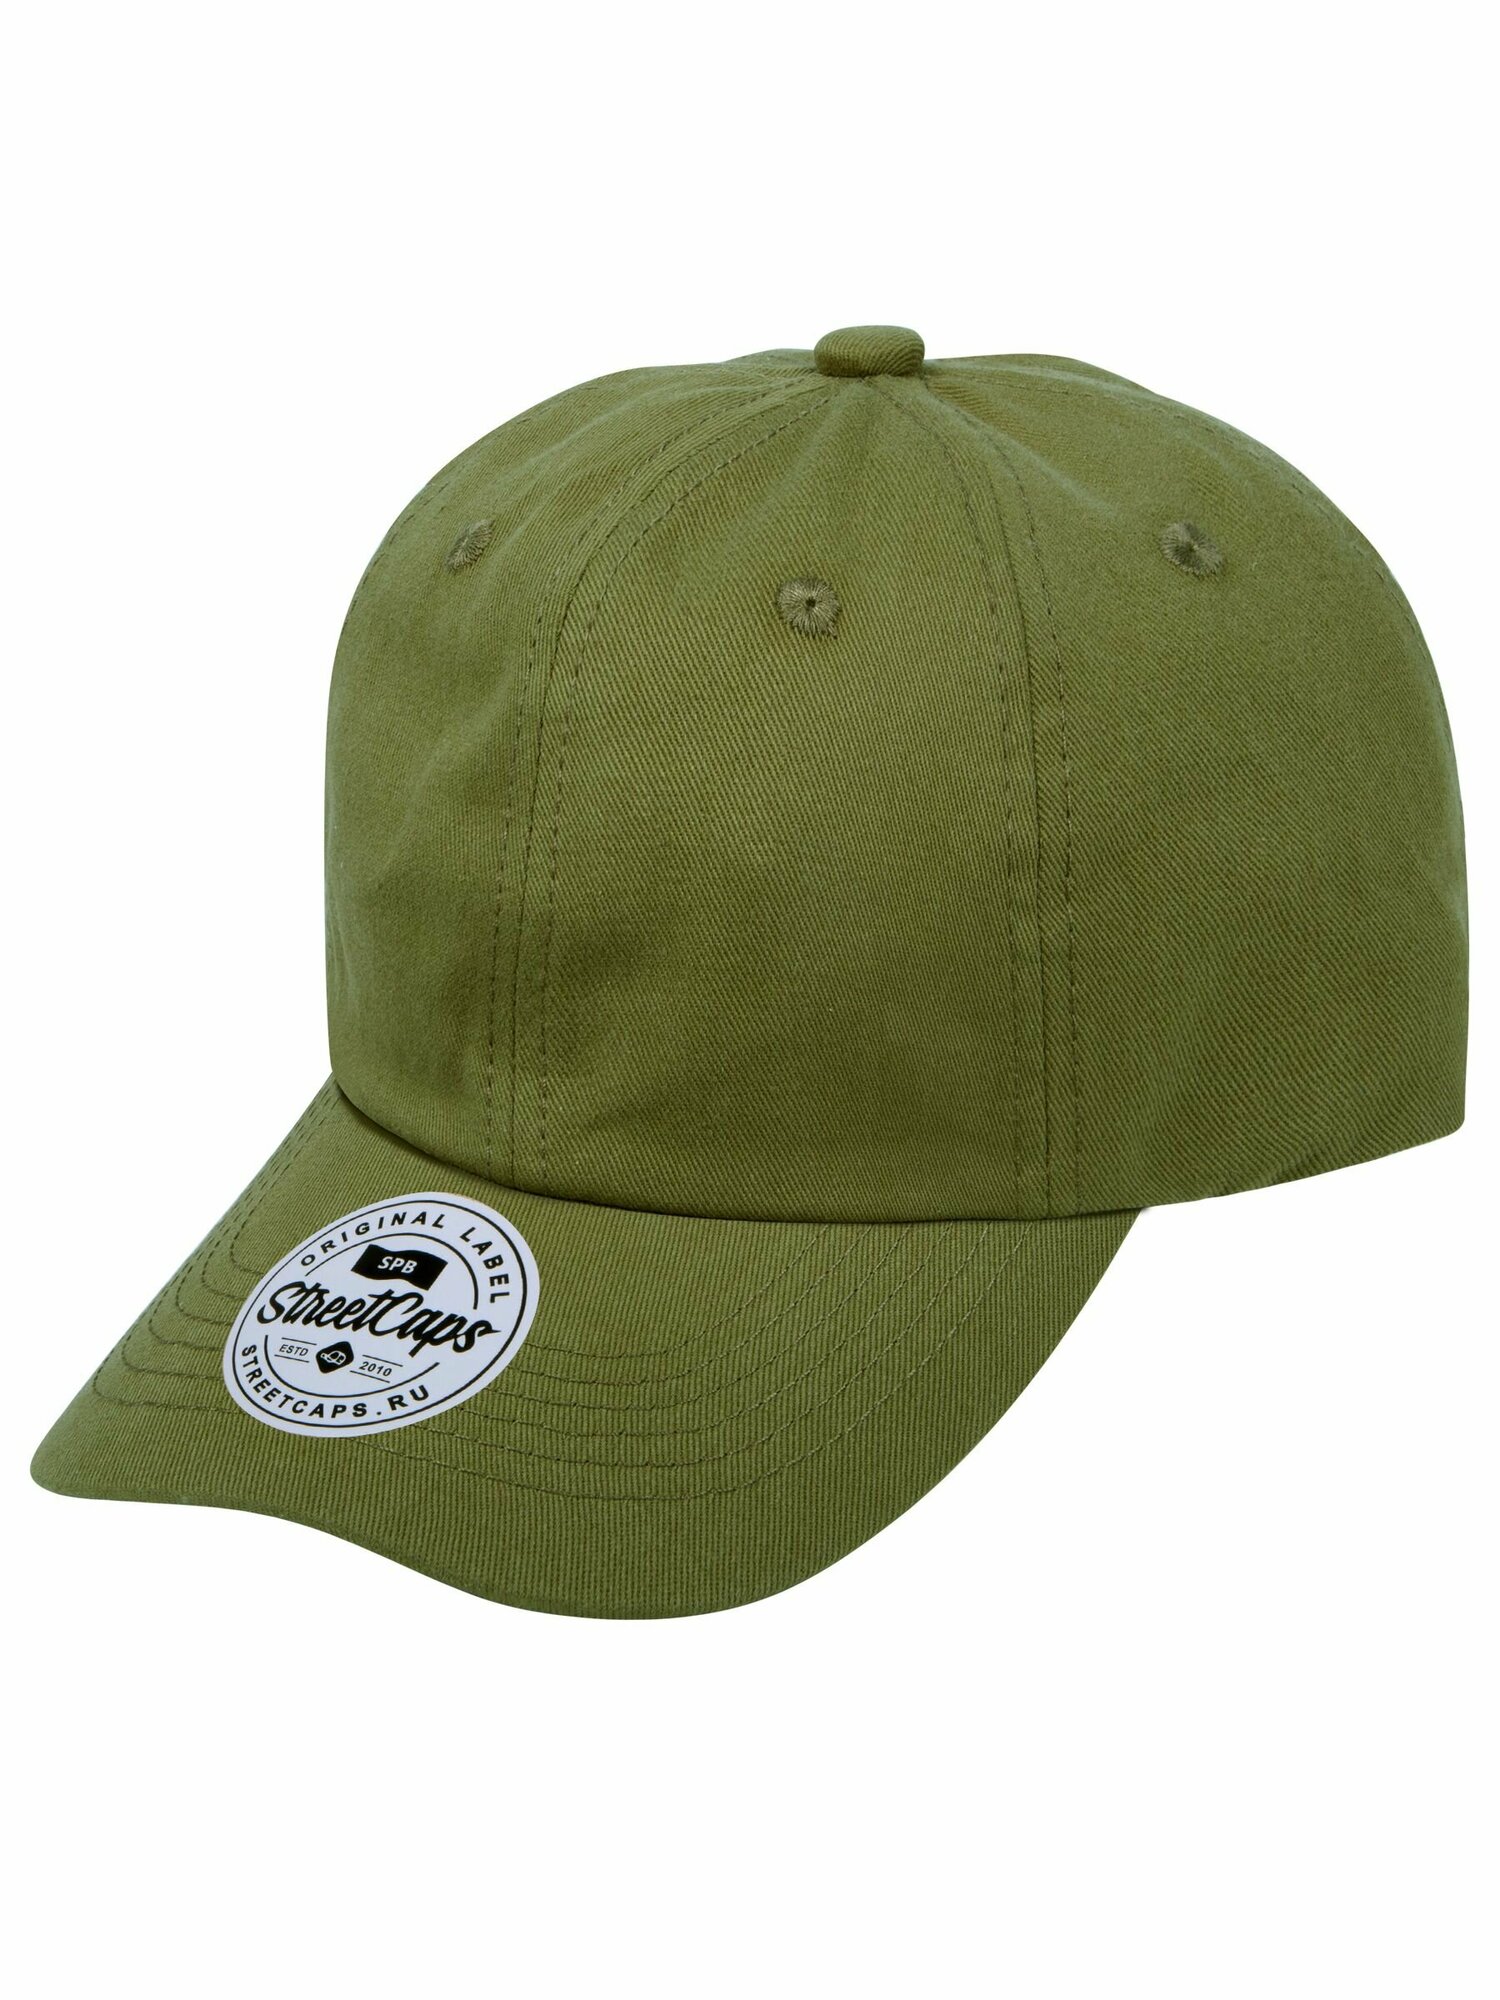 Бейсболка Street caps Бейсболка классическая / Street Caps / 305-6-1-001 Мягкая хлопковая кепка с низким профилем